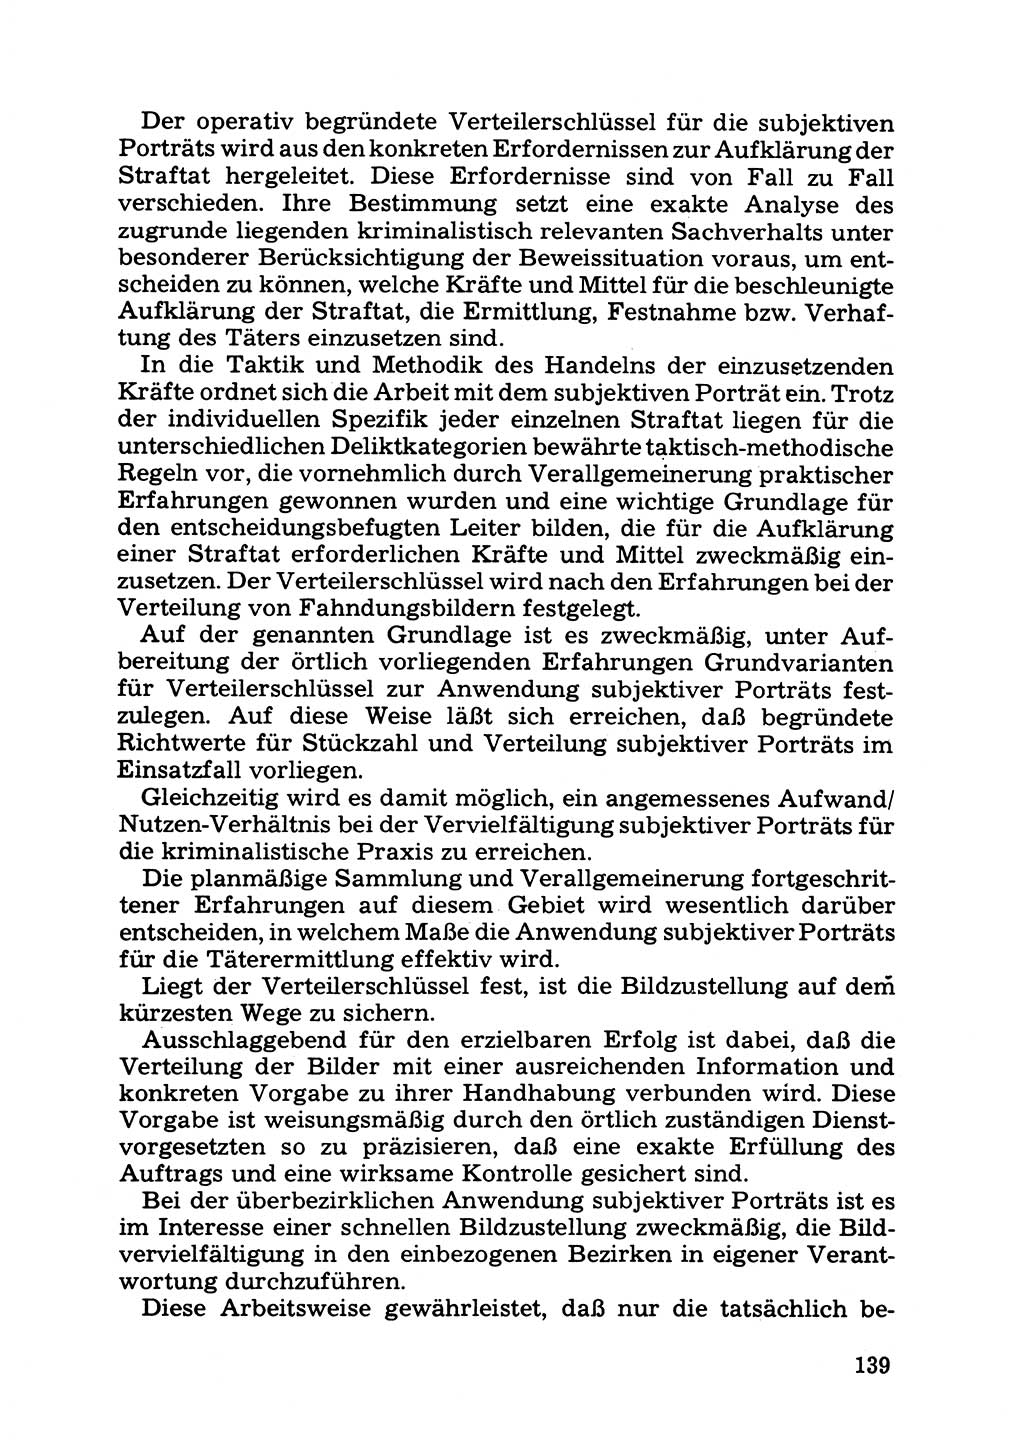 Das subjektive Porträt [Deutsche Demokratische Republik (DDR)] 1981, Seite 139 (Subj. Port. DDR 1981, S. 139)